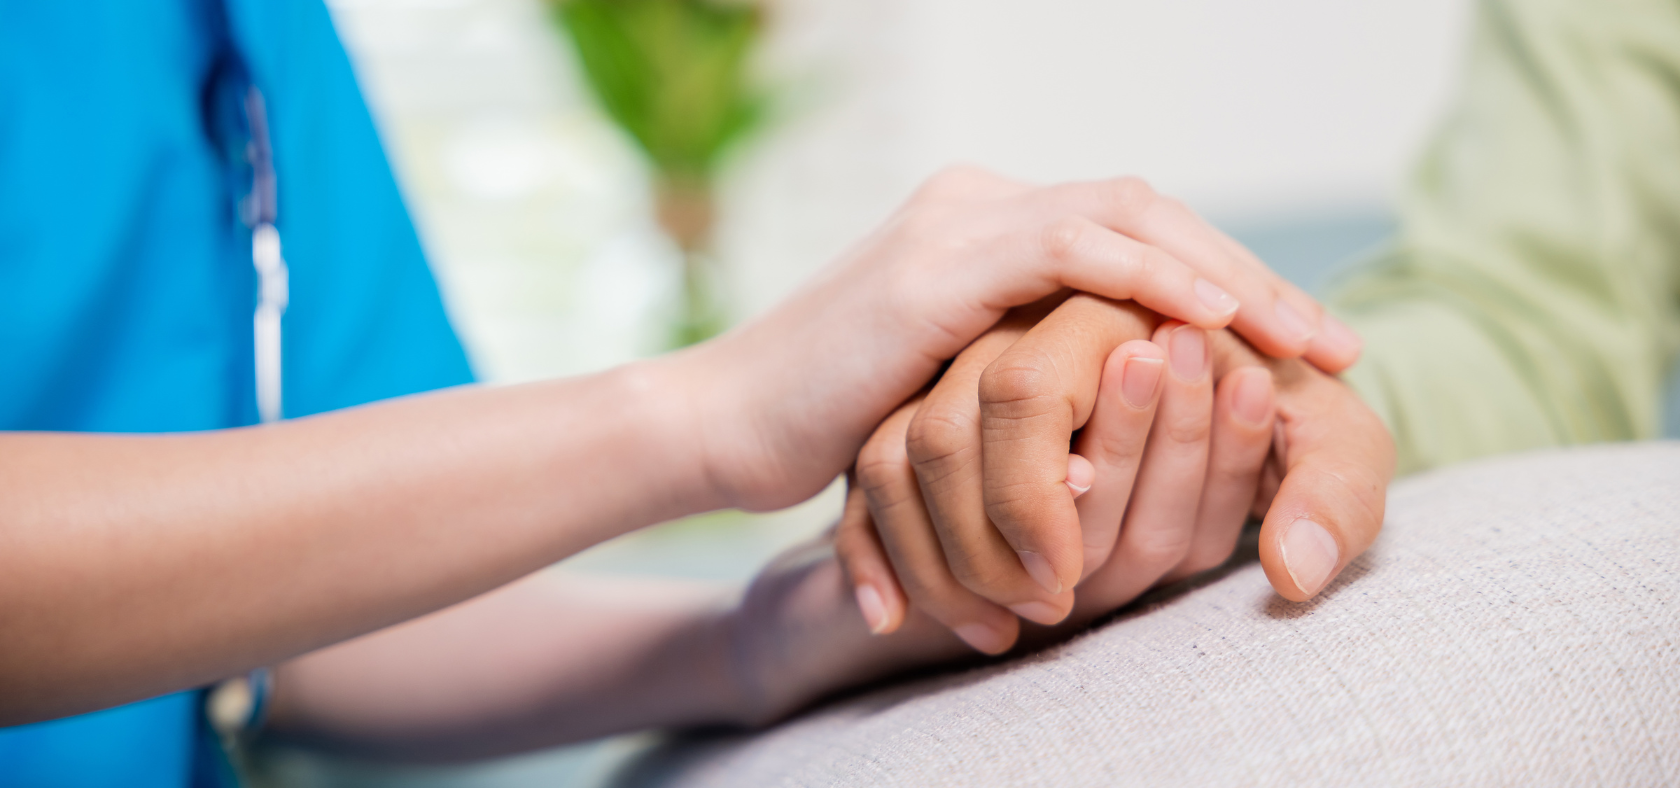 Pfleger hält Hand von hilfsbedürftigem Menschen